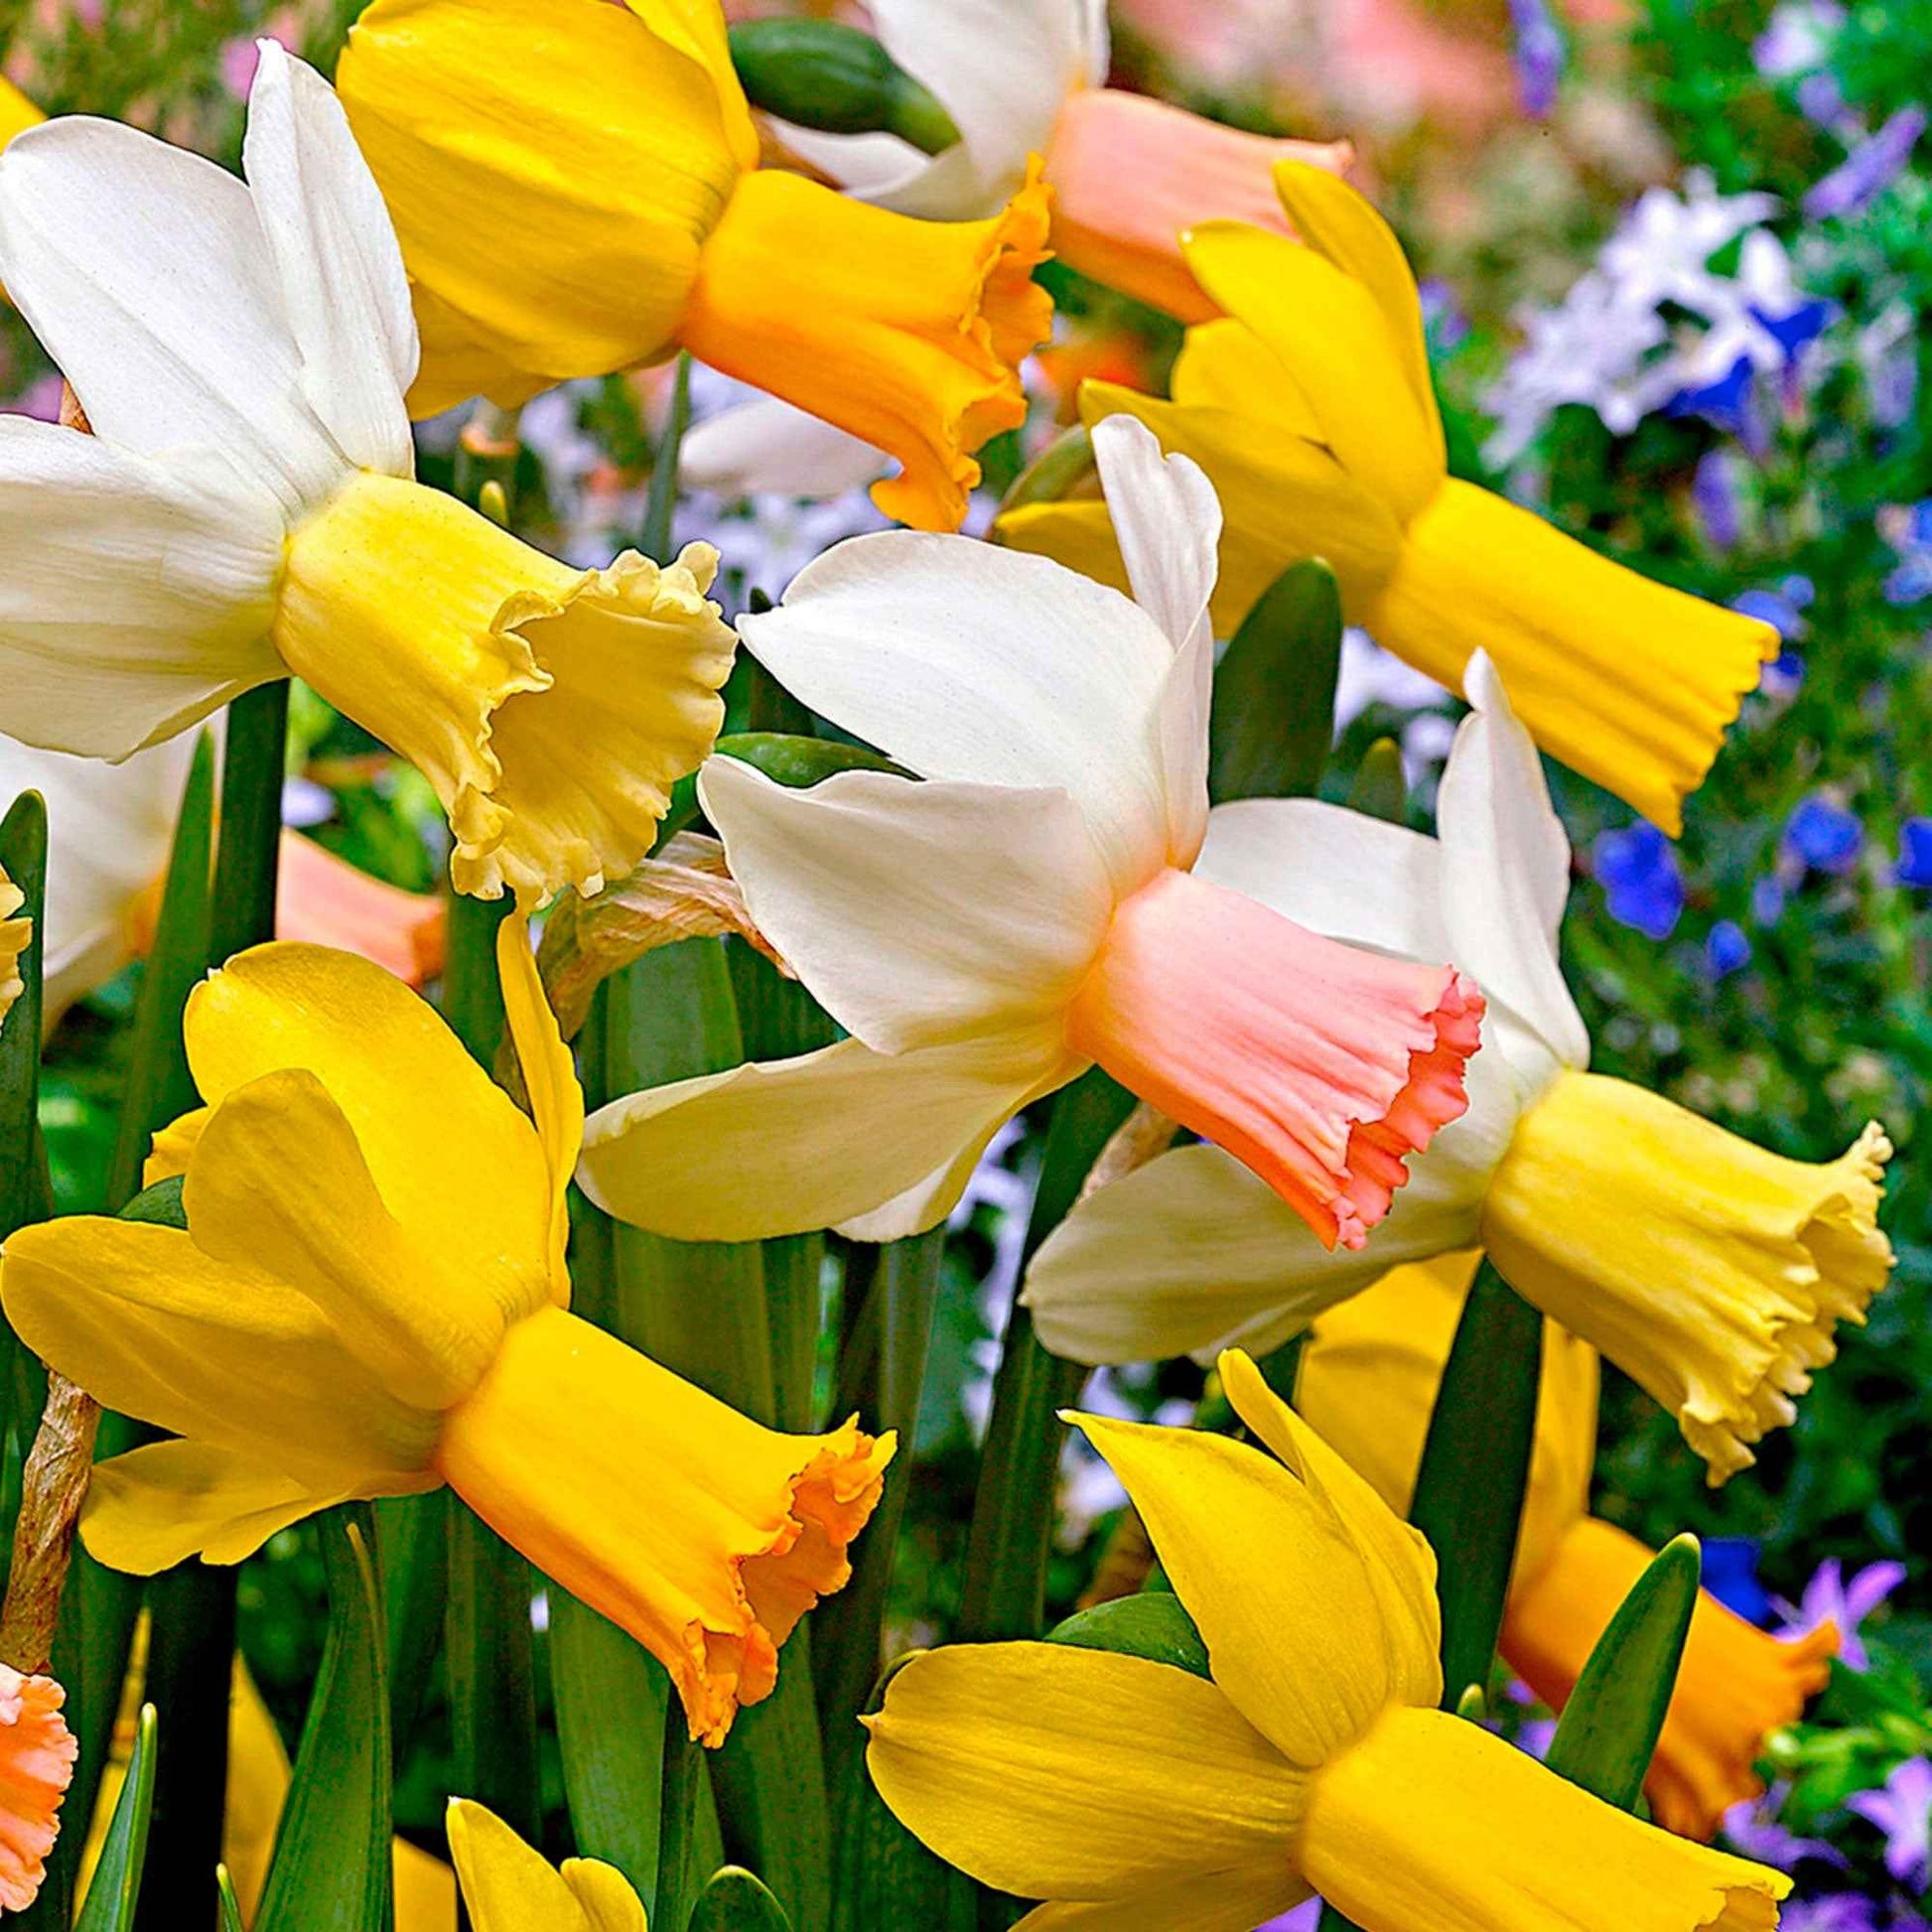 25x Narzisse Narcissus - Mischung 'Dwarf' biologisch gelb-weiβ - Beliebte Blumenzwiebeln